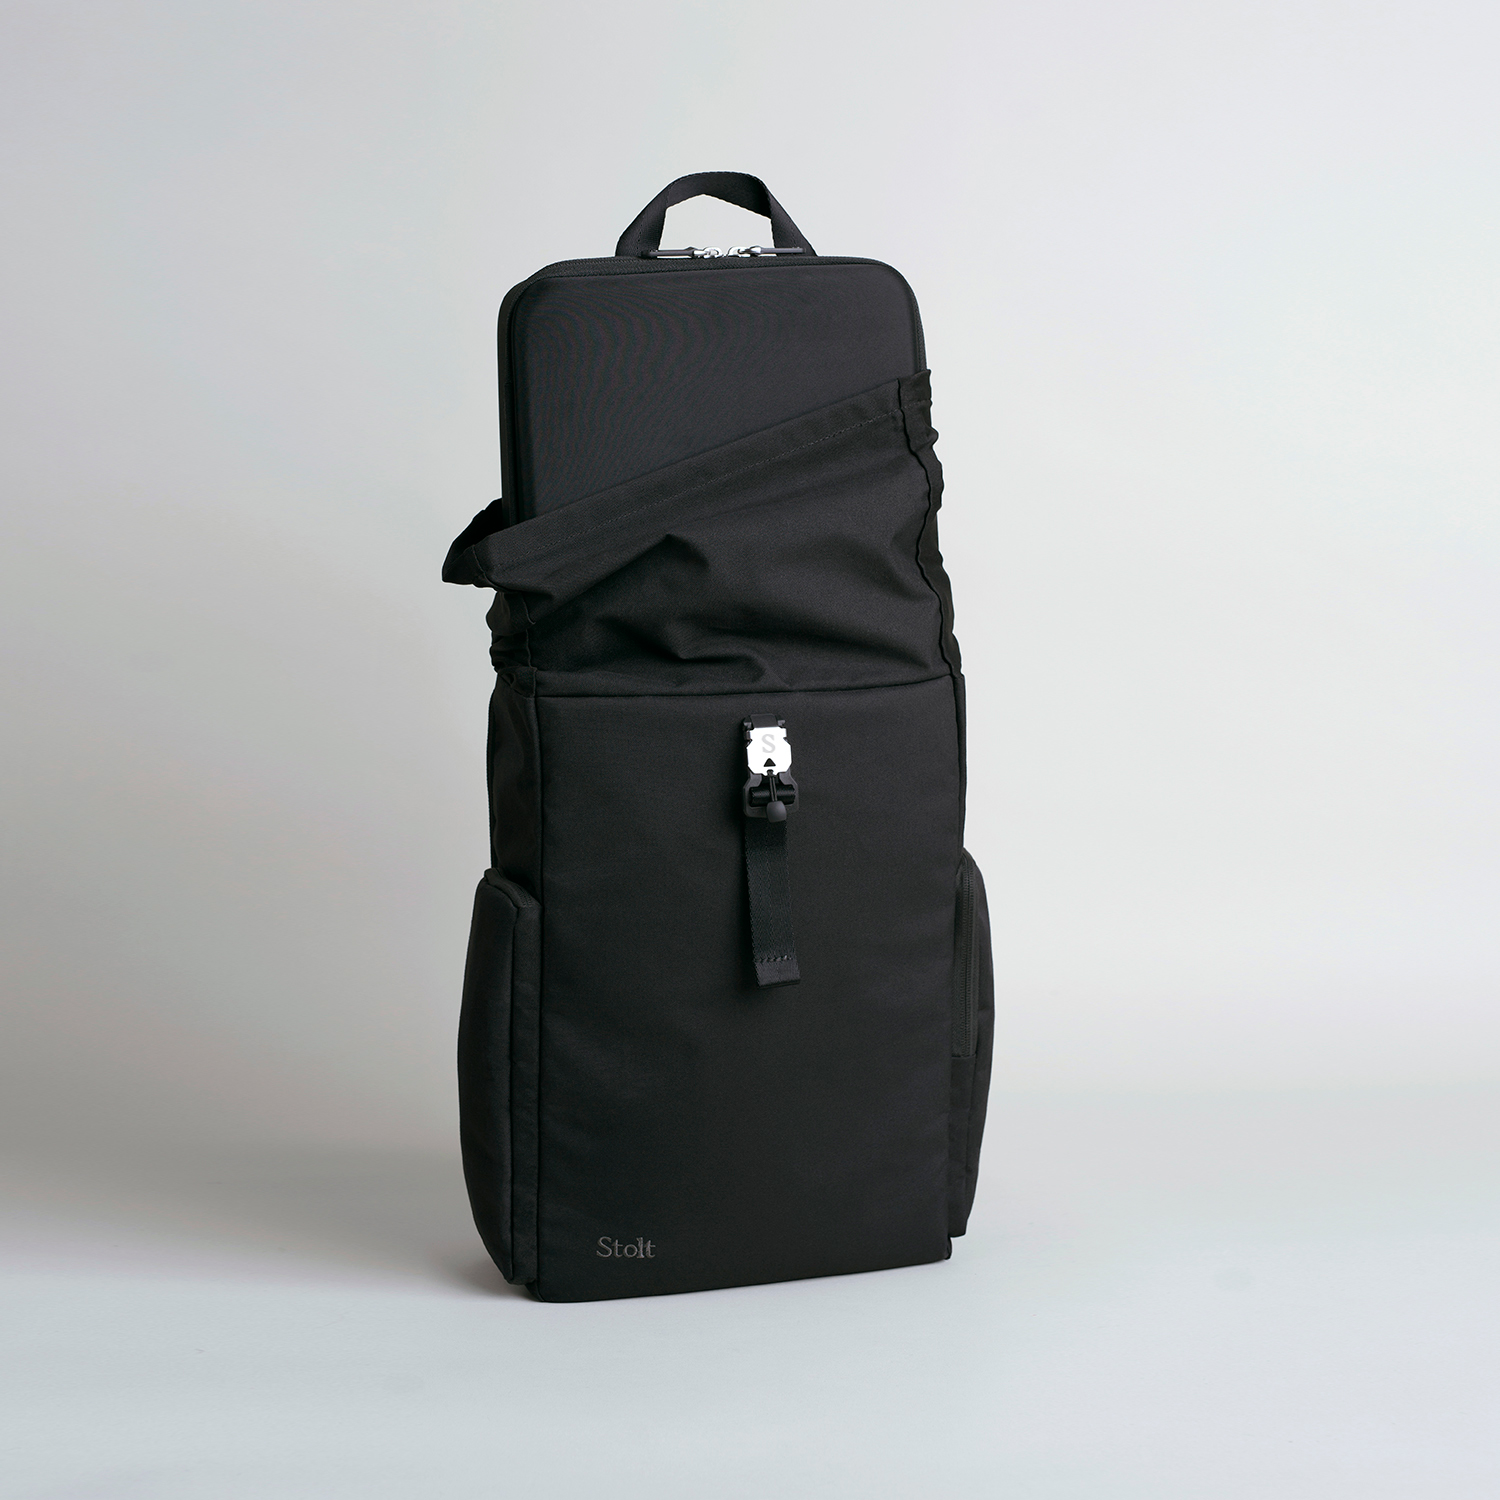 Modular Commuter Roll-Top Backpack